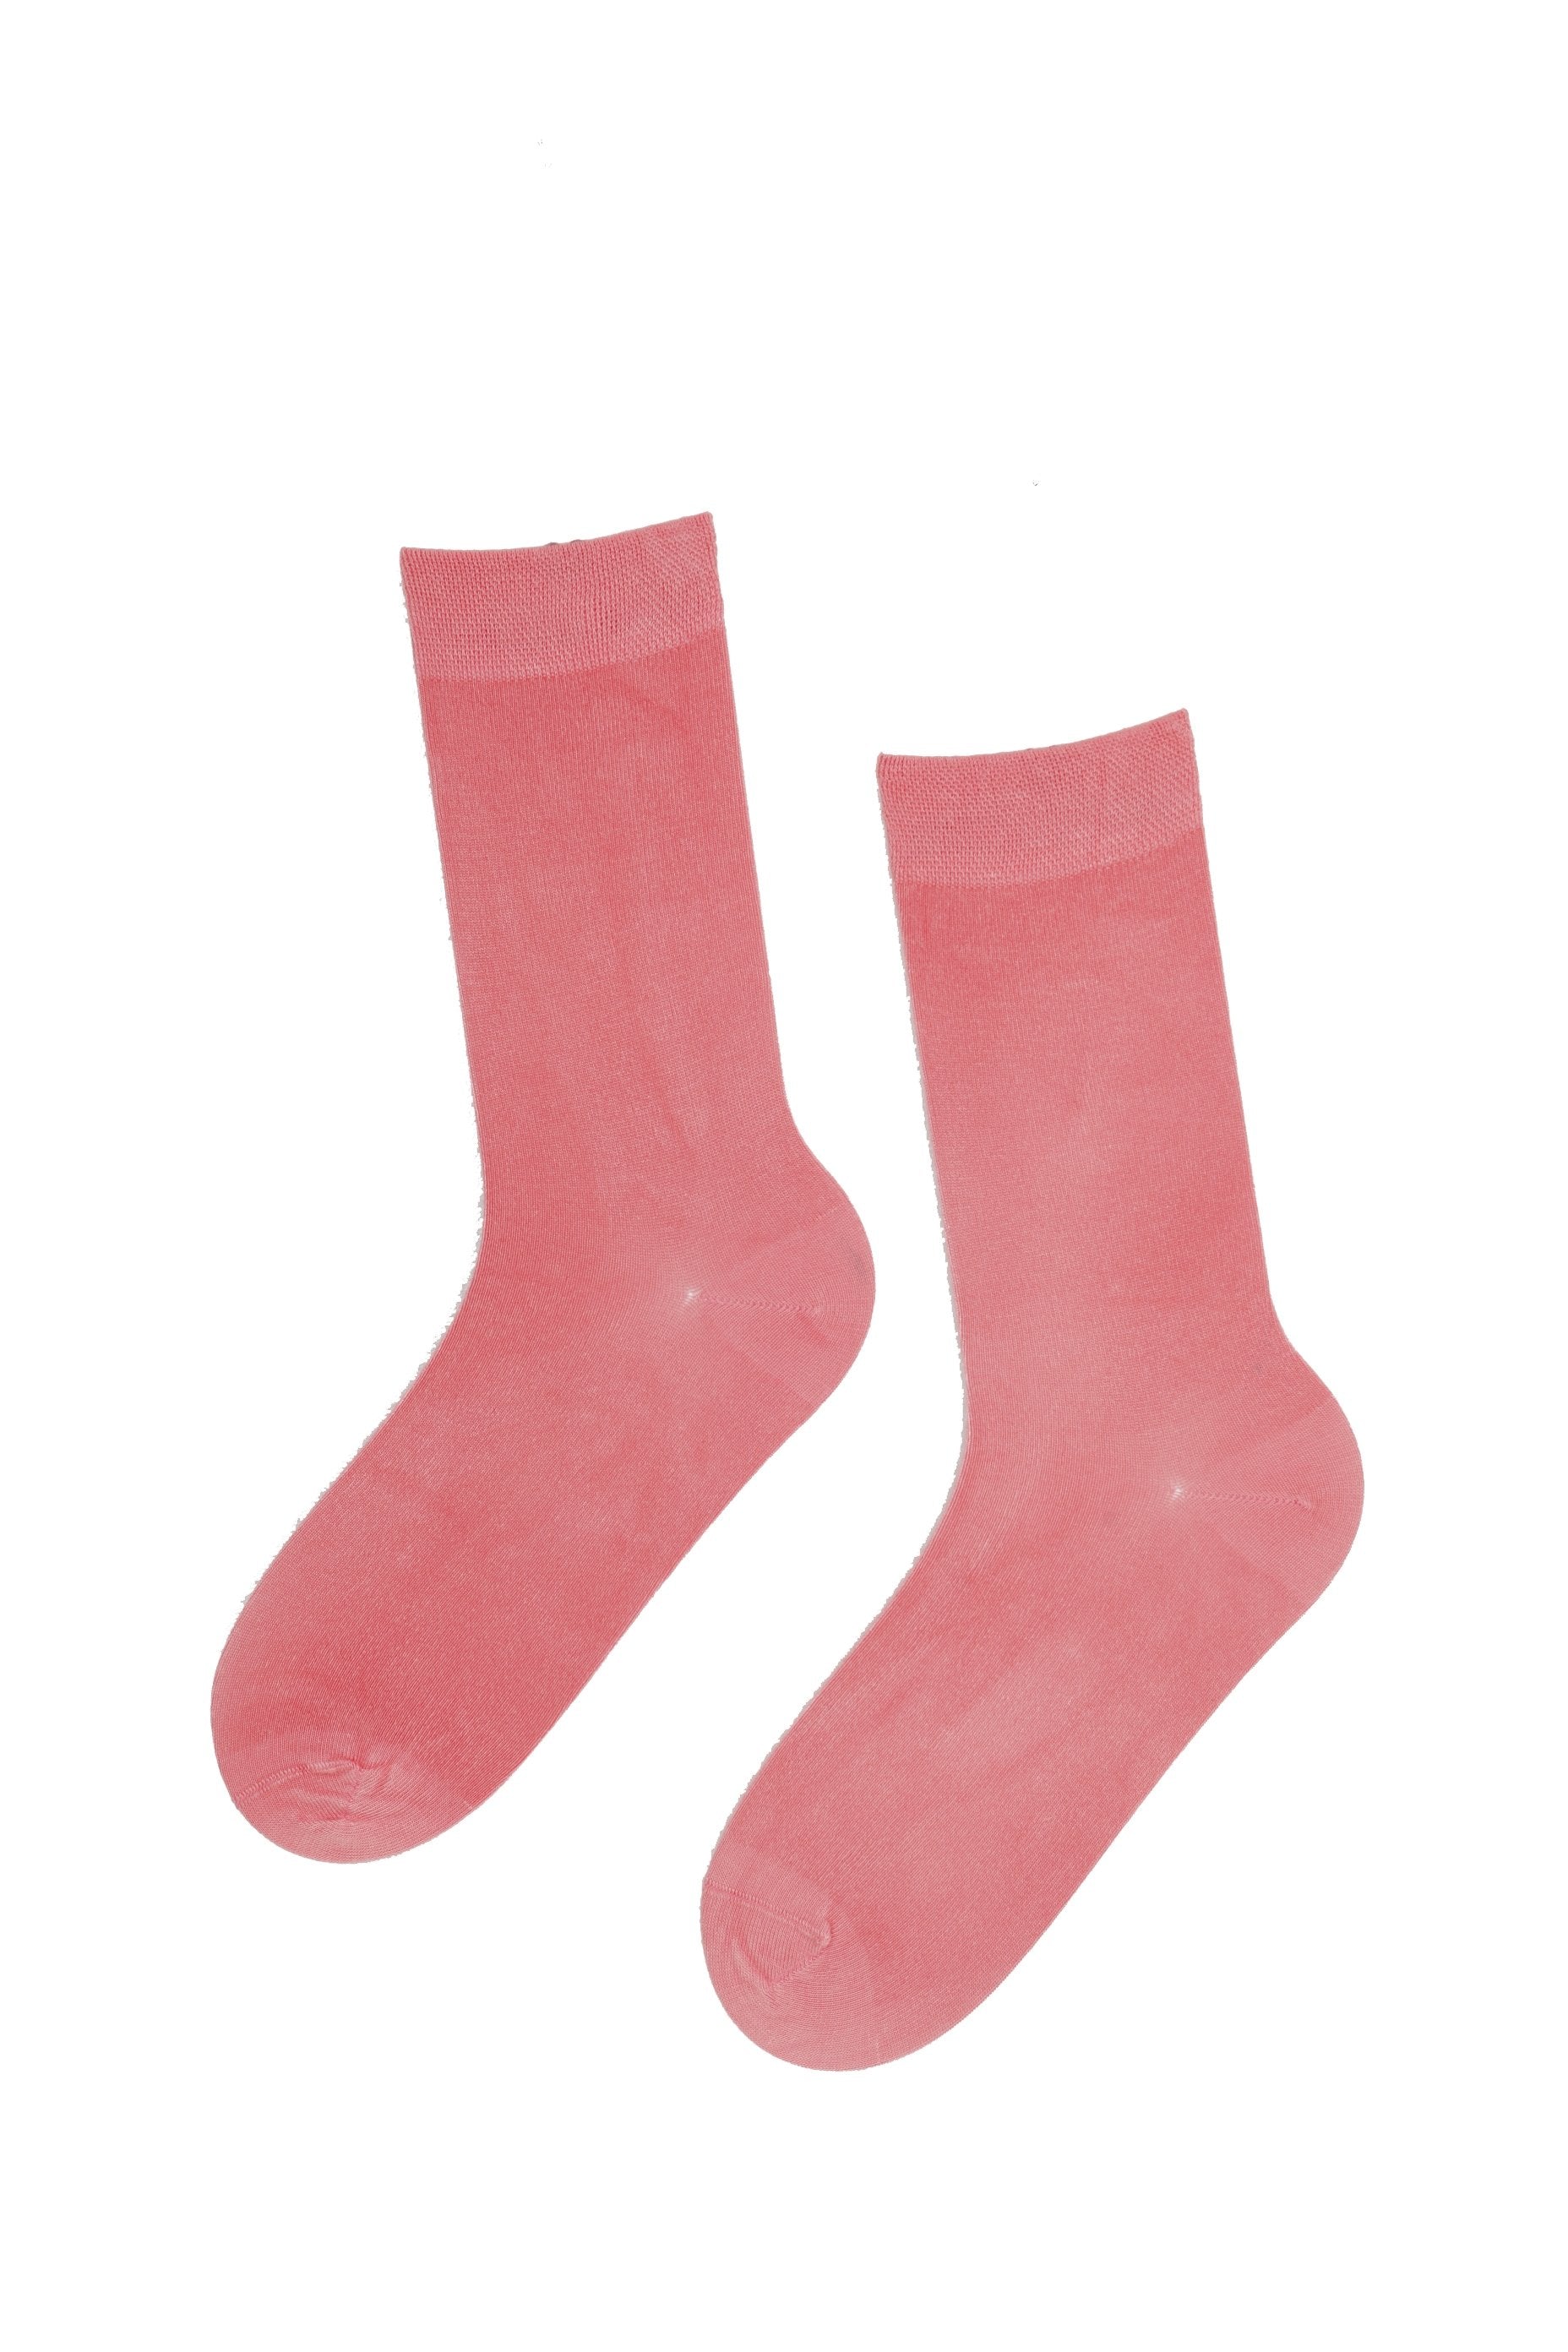 JANNE women's pink socks